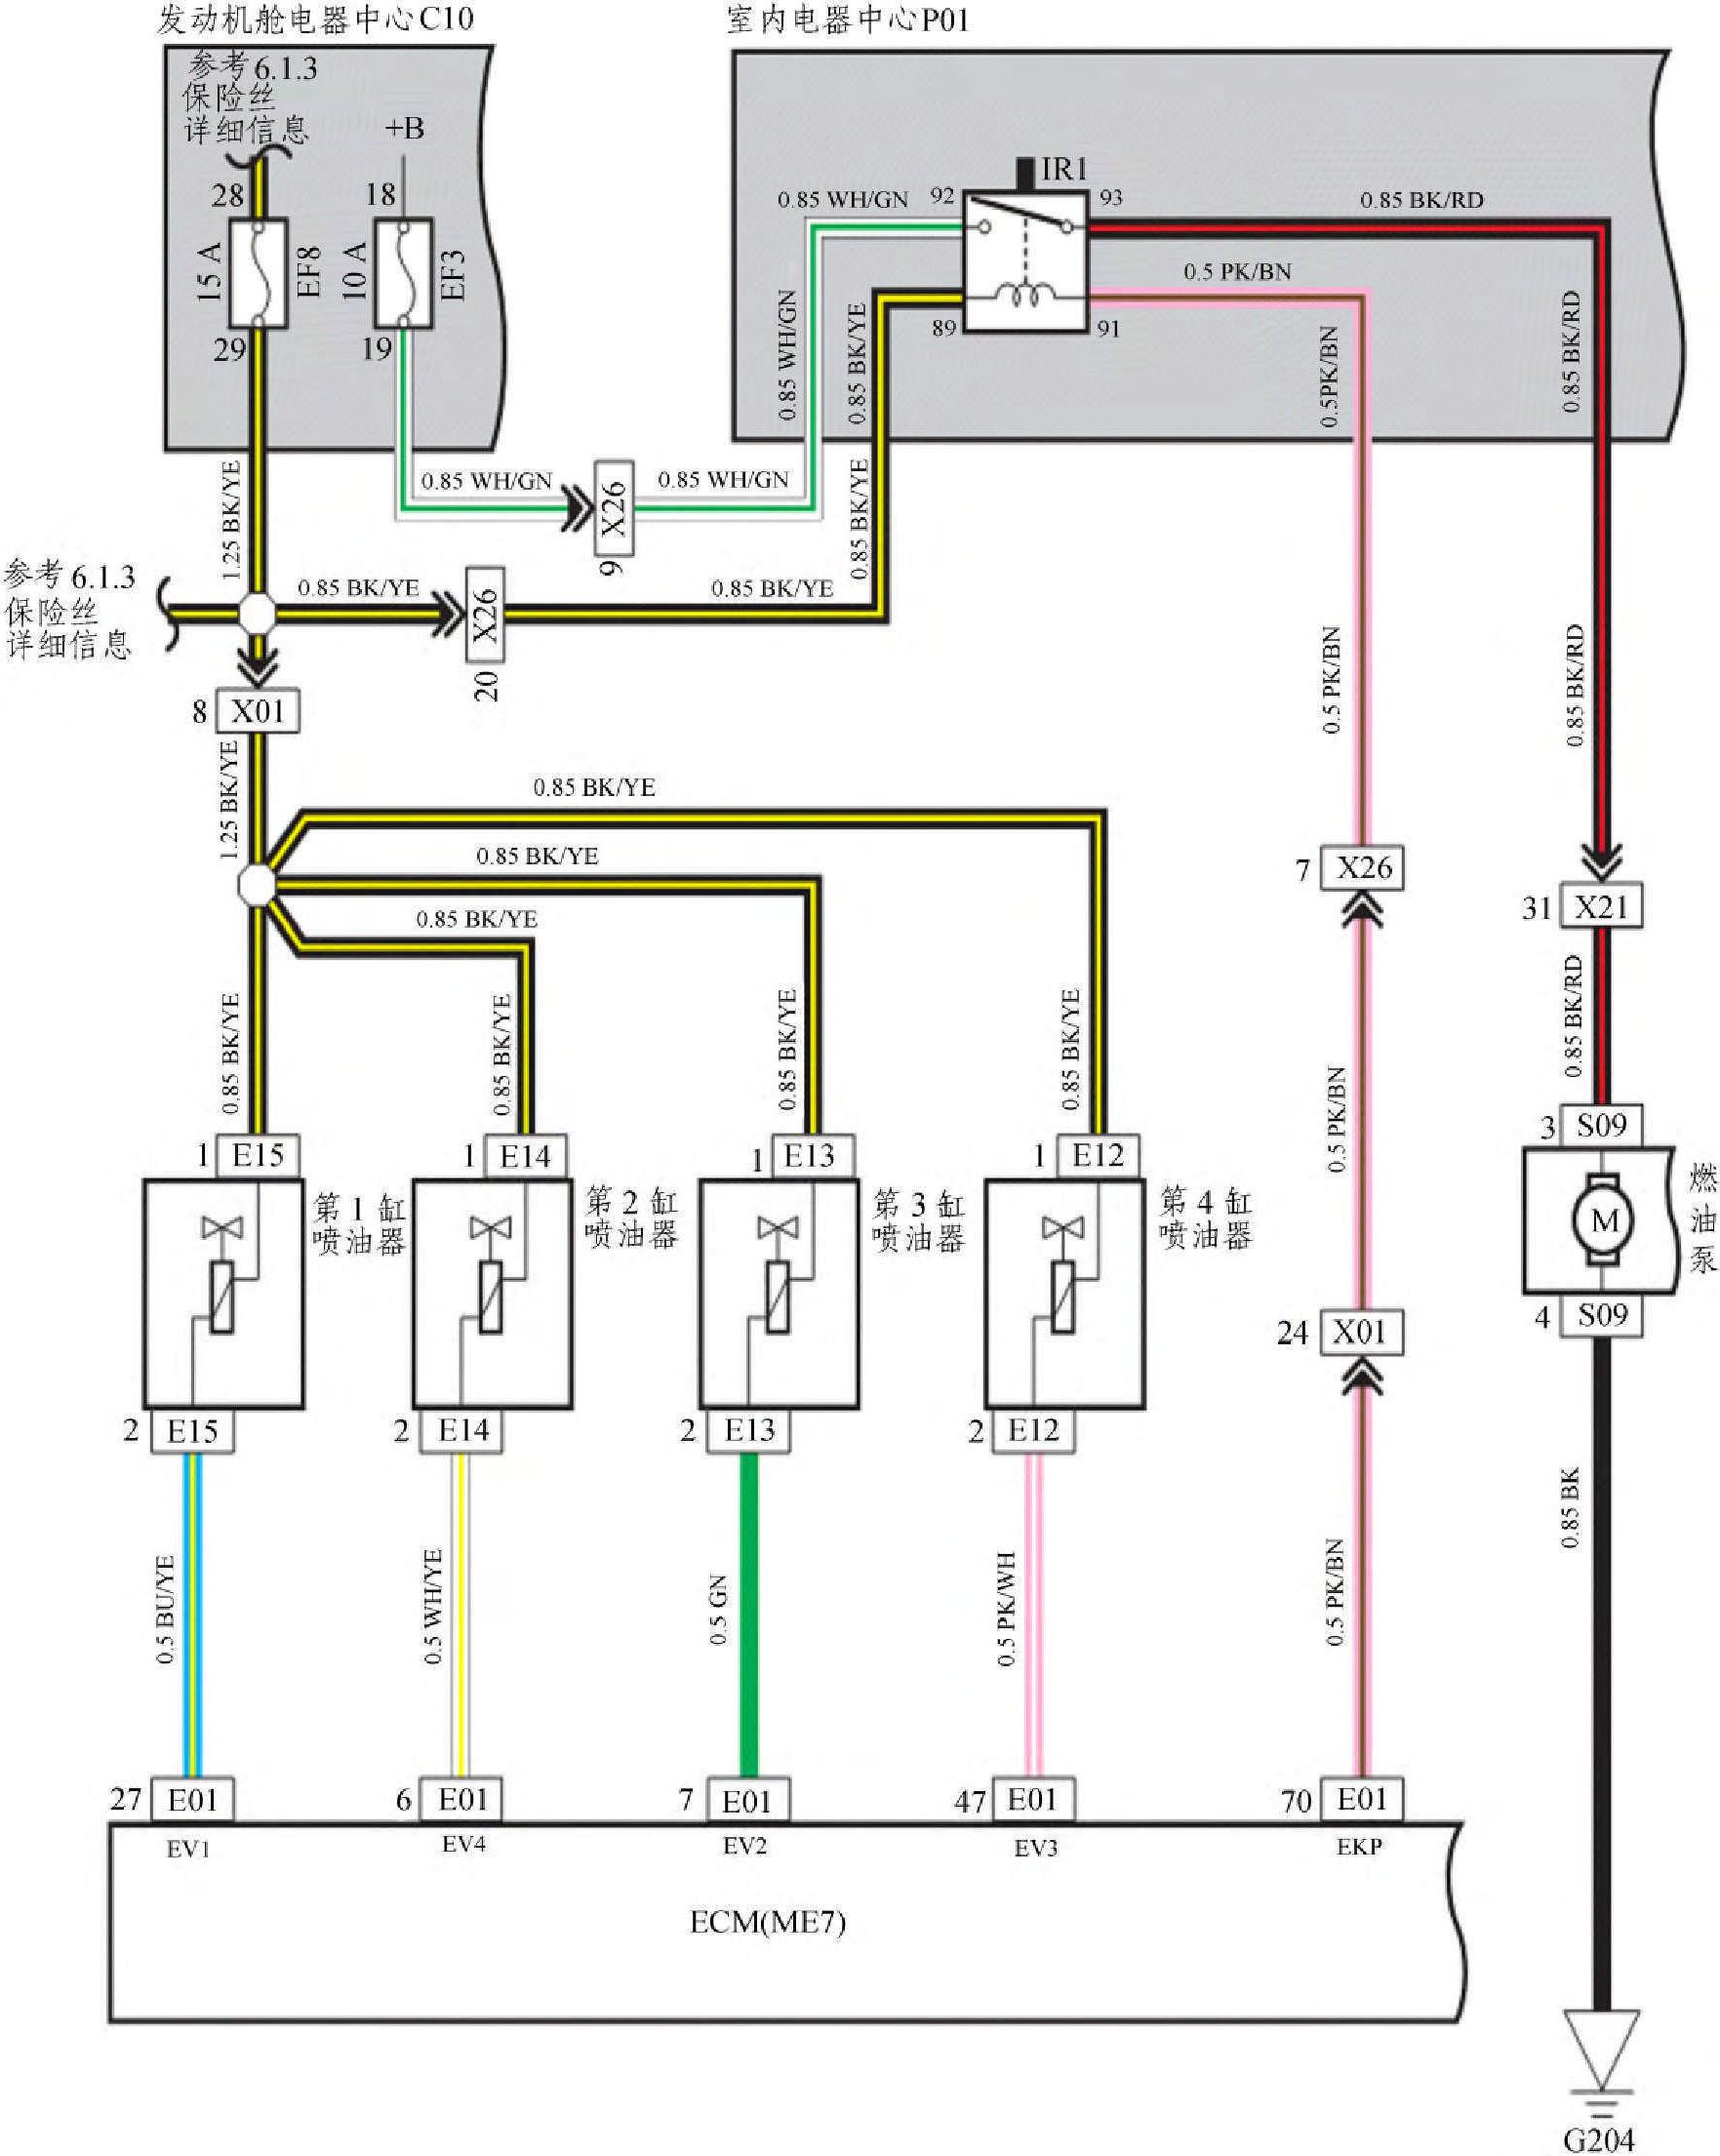 任务4.3 参考悦翔汽车燃油系统电路图完成实车故障诊断